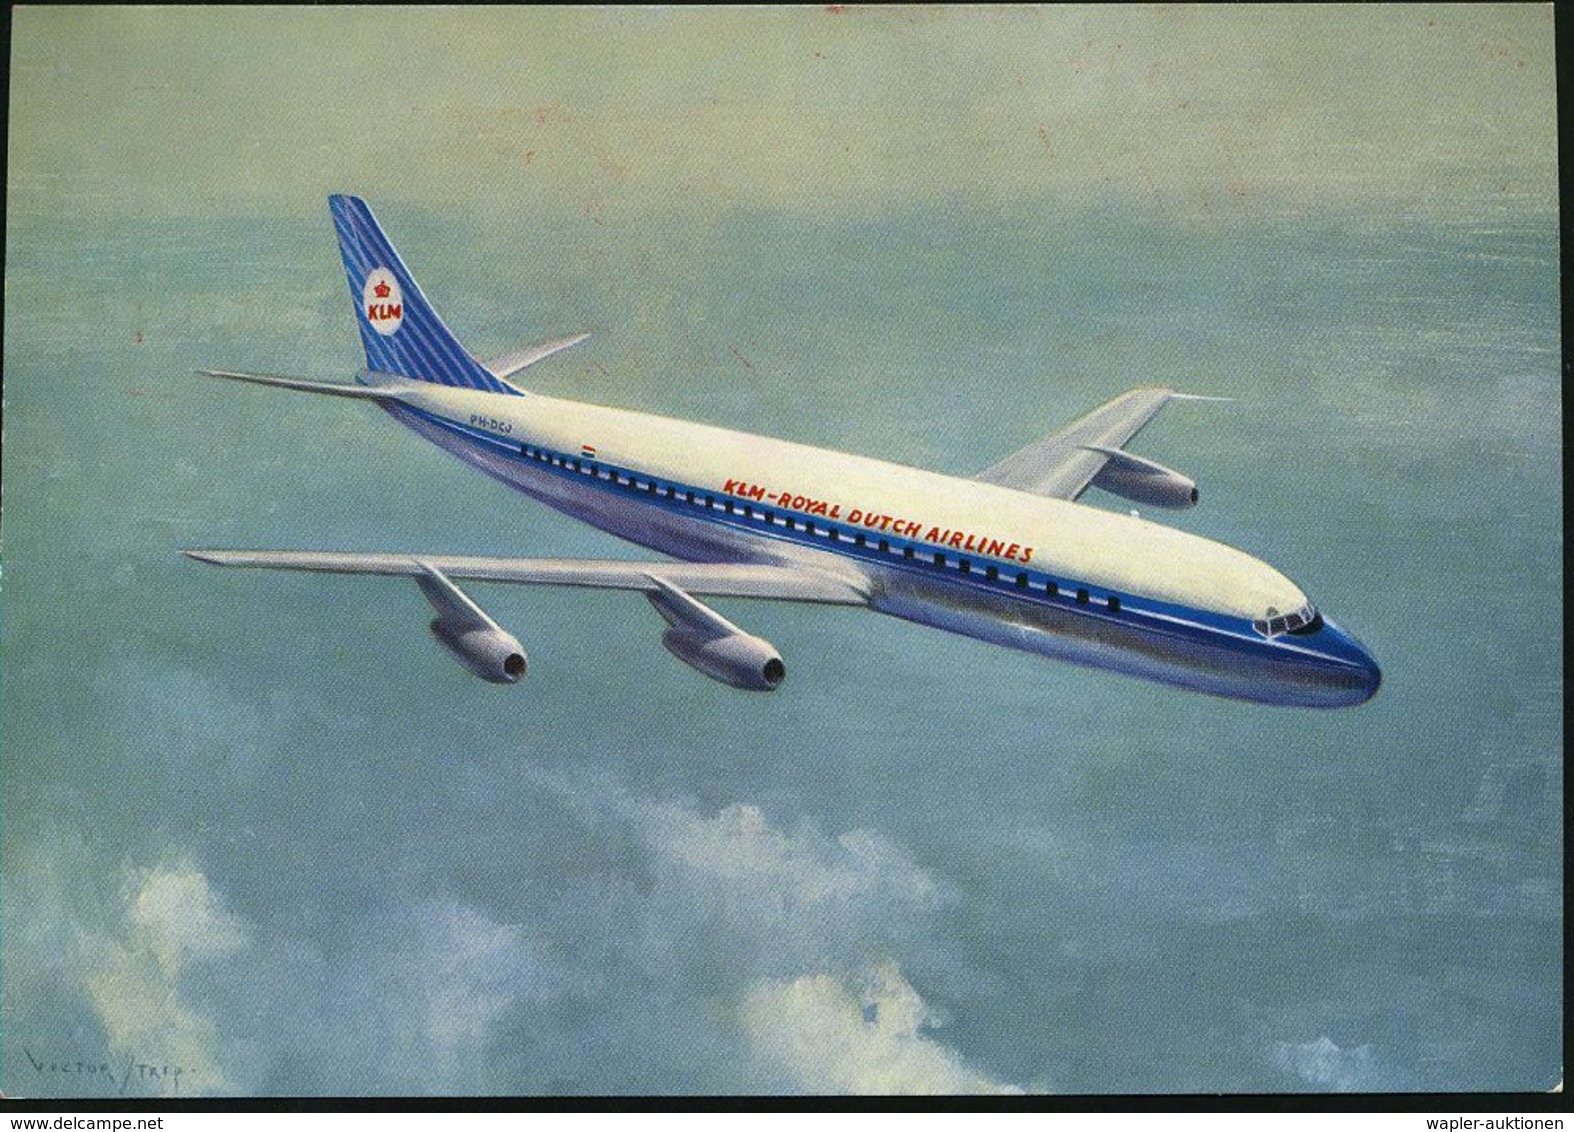 FLUGGESELLSCHAFTEN (OHNE DEUTSCHLAND) : (16) FRANKFURT (MAIN) 9/ KLM/ 40/ JAHRE/ 1919-/ 1959 1959 (8.1.) Seltener Jubil. - Other (Air)